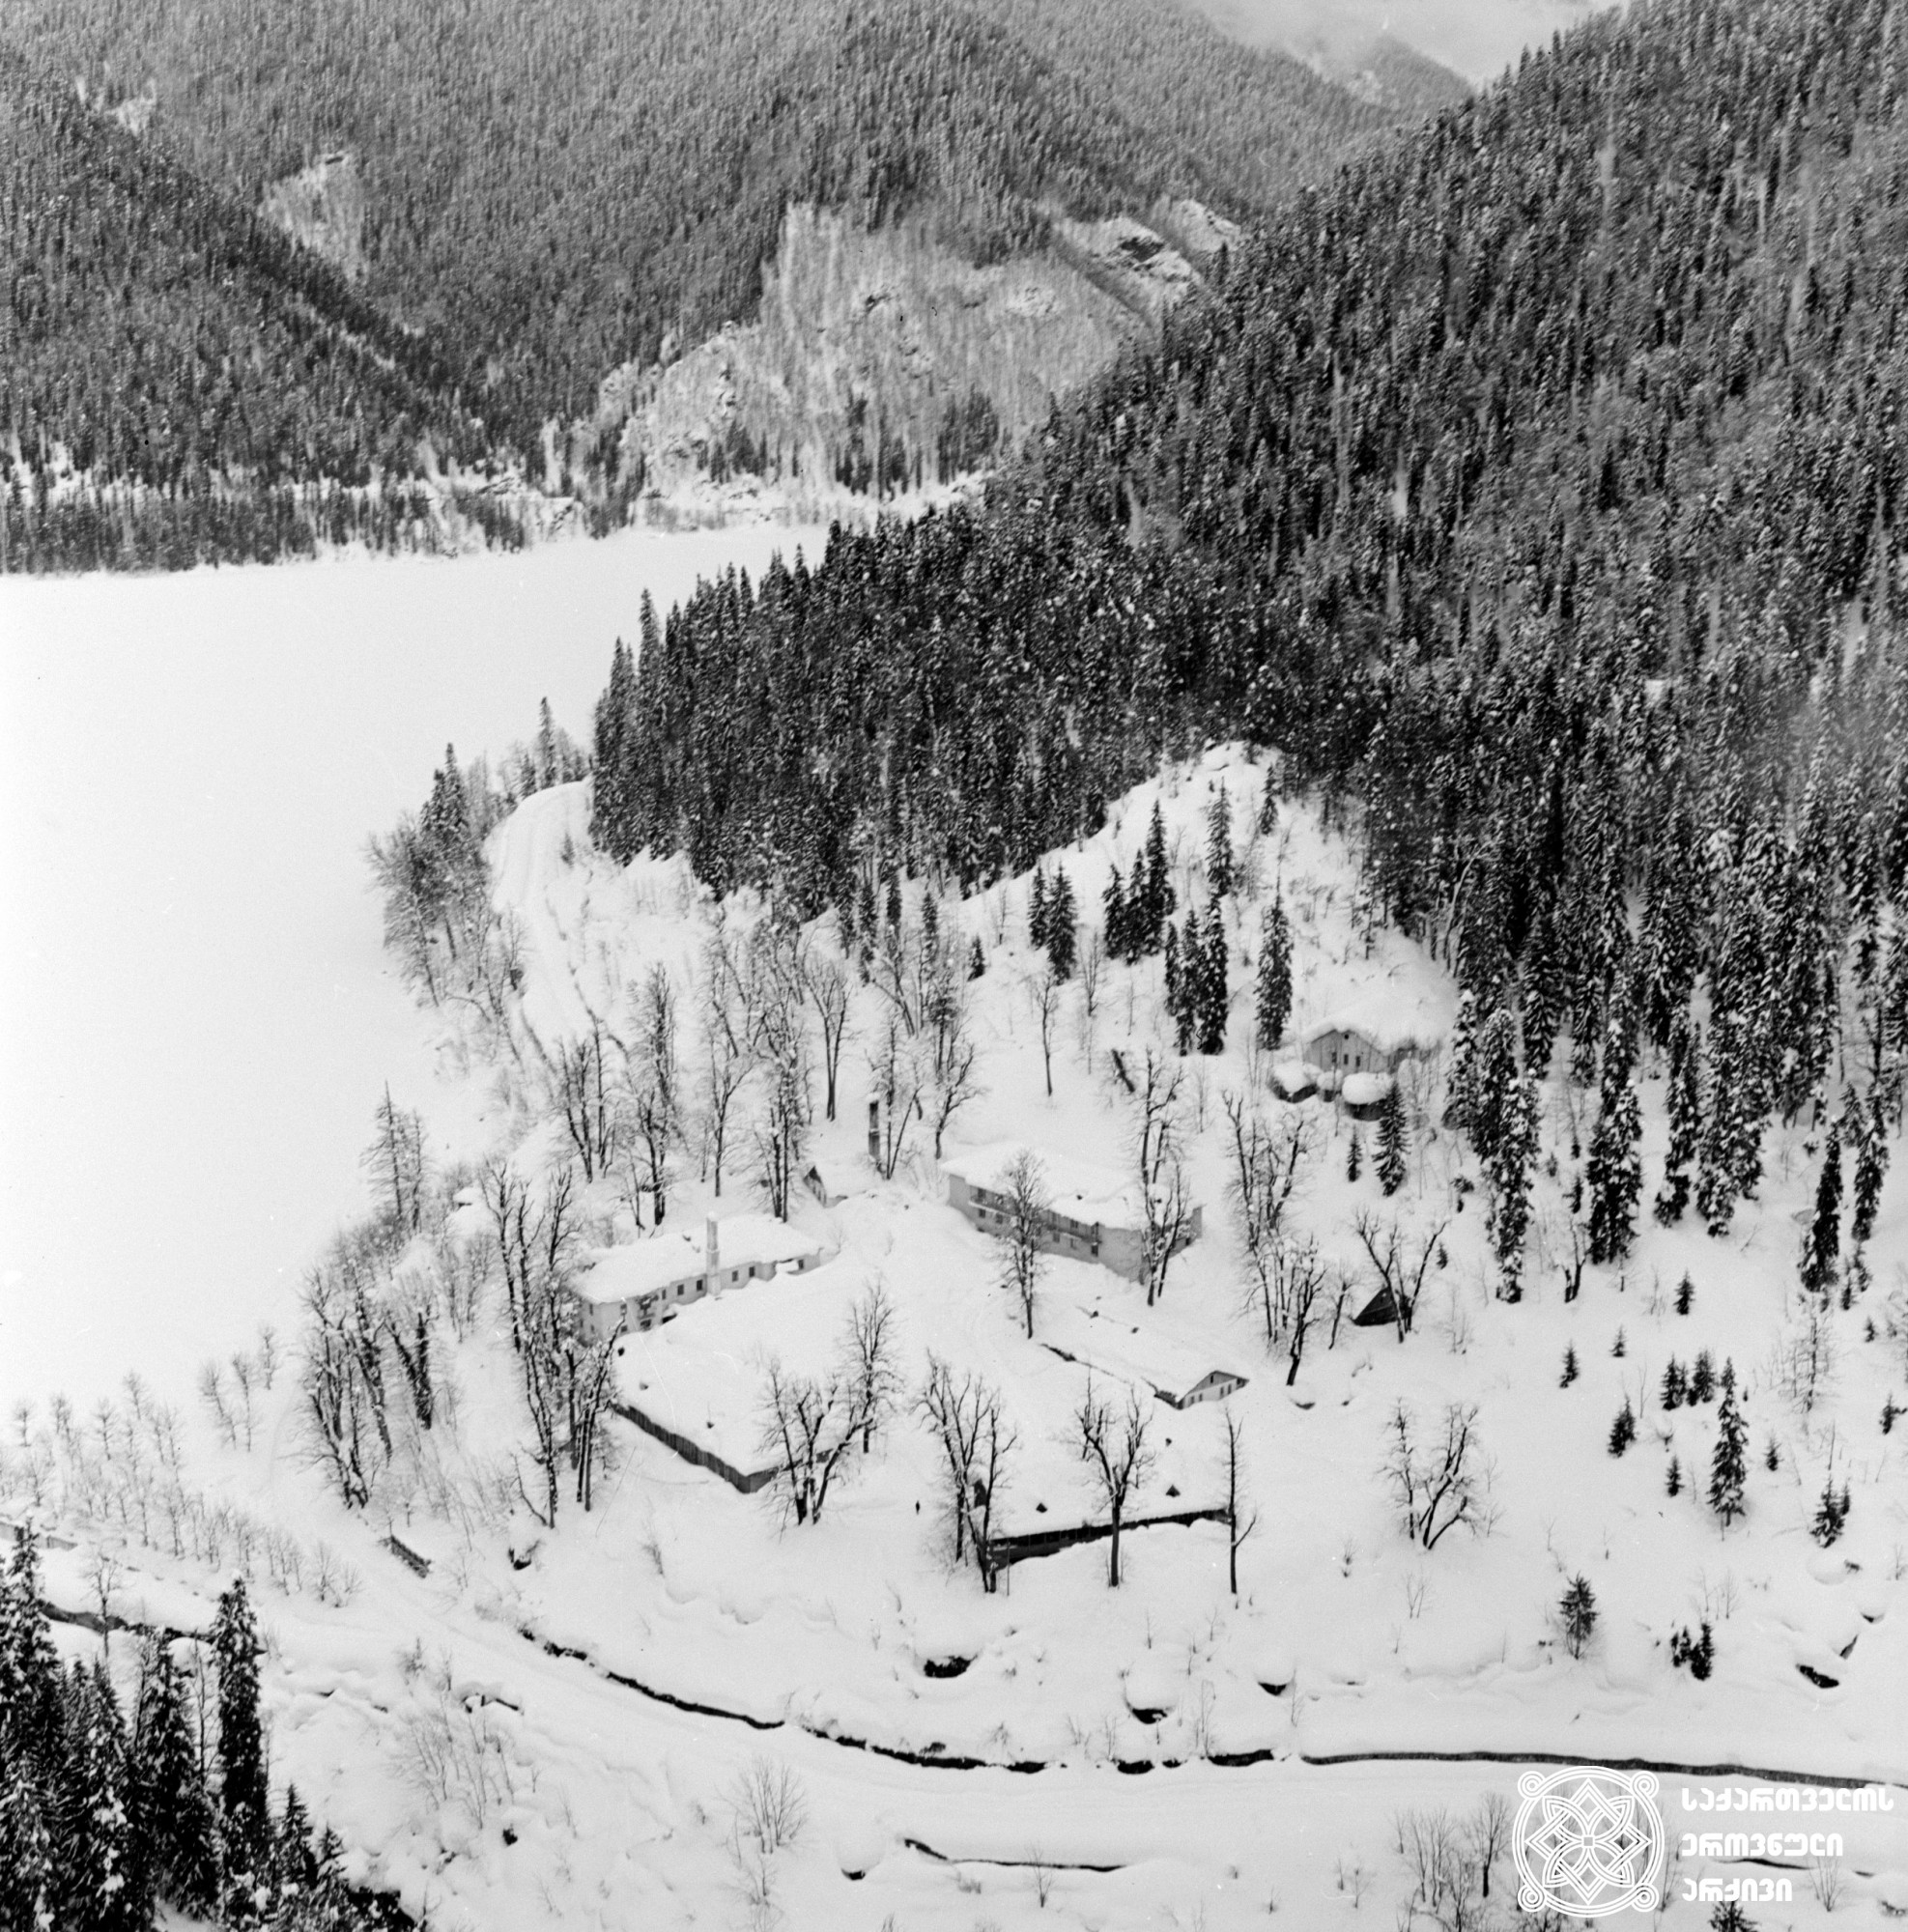 დათოვლილი რიწა, აფხაზეთი, 1976 წელი. <br>
Ritsa covered with snow. Apkhazeti, 1967.